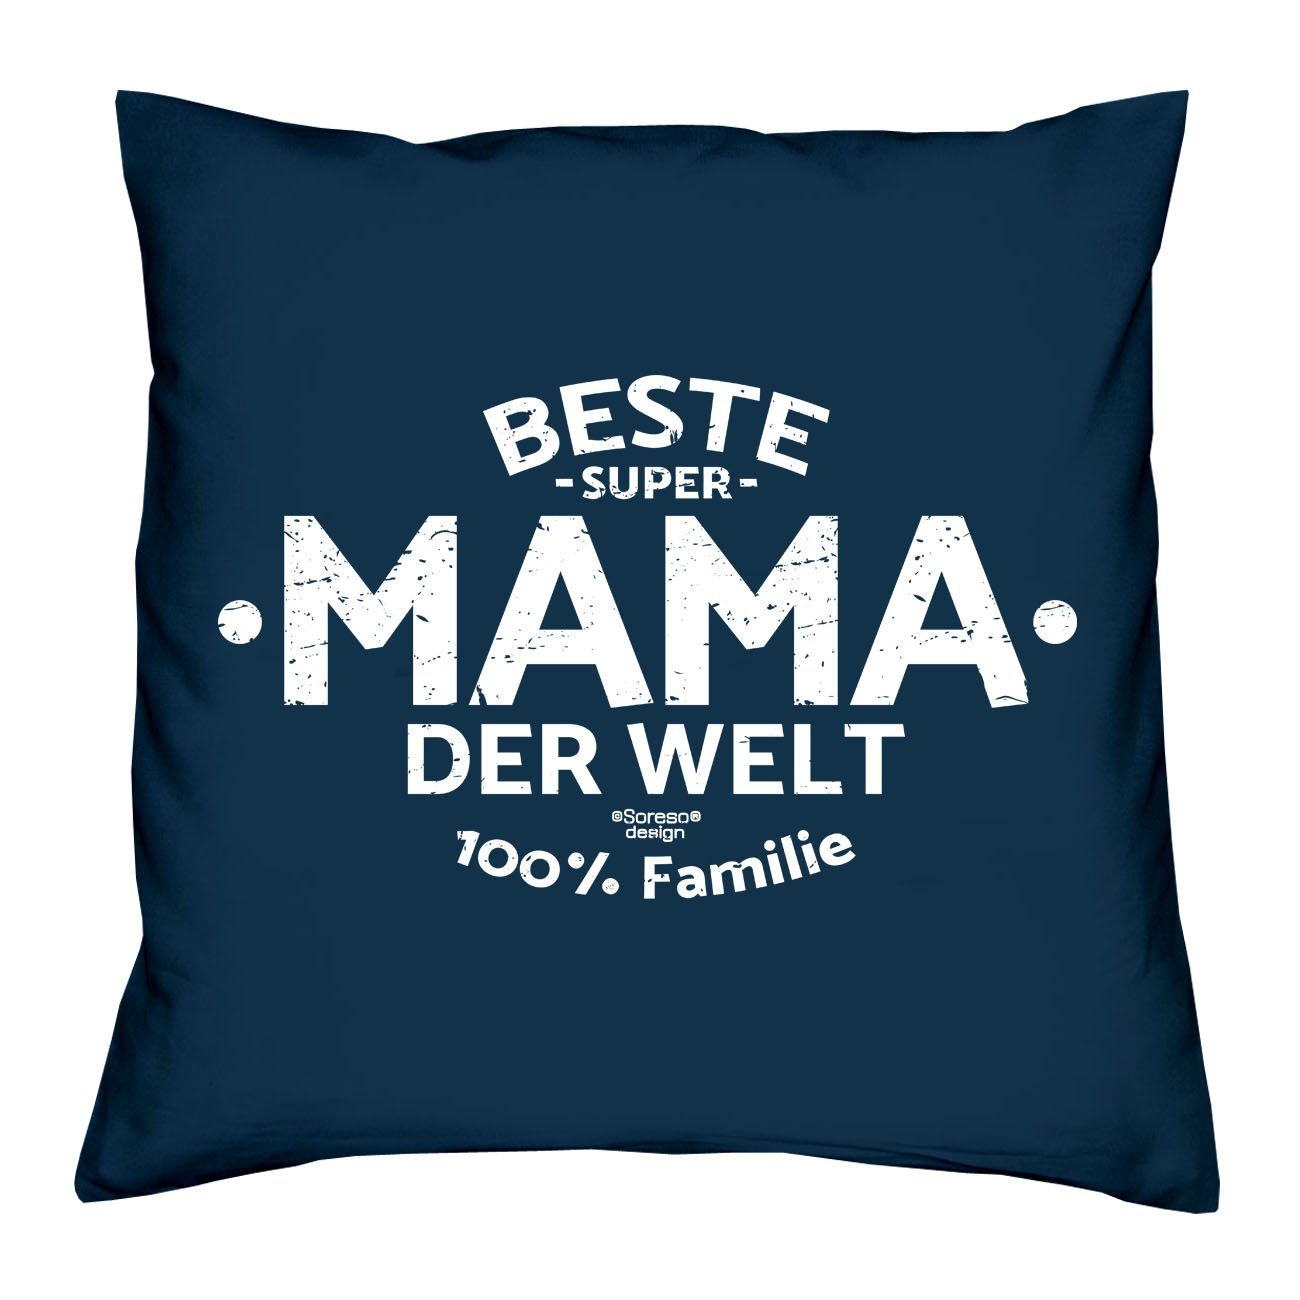 navy-blau Welt Muttertagsgeschenk Dekokissen Mama Soreso® Kissen Beste Urkunde, Mama & der